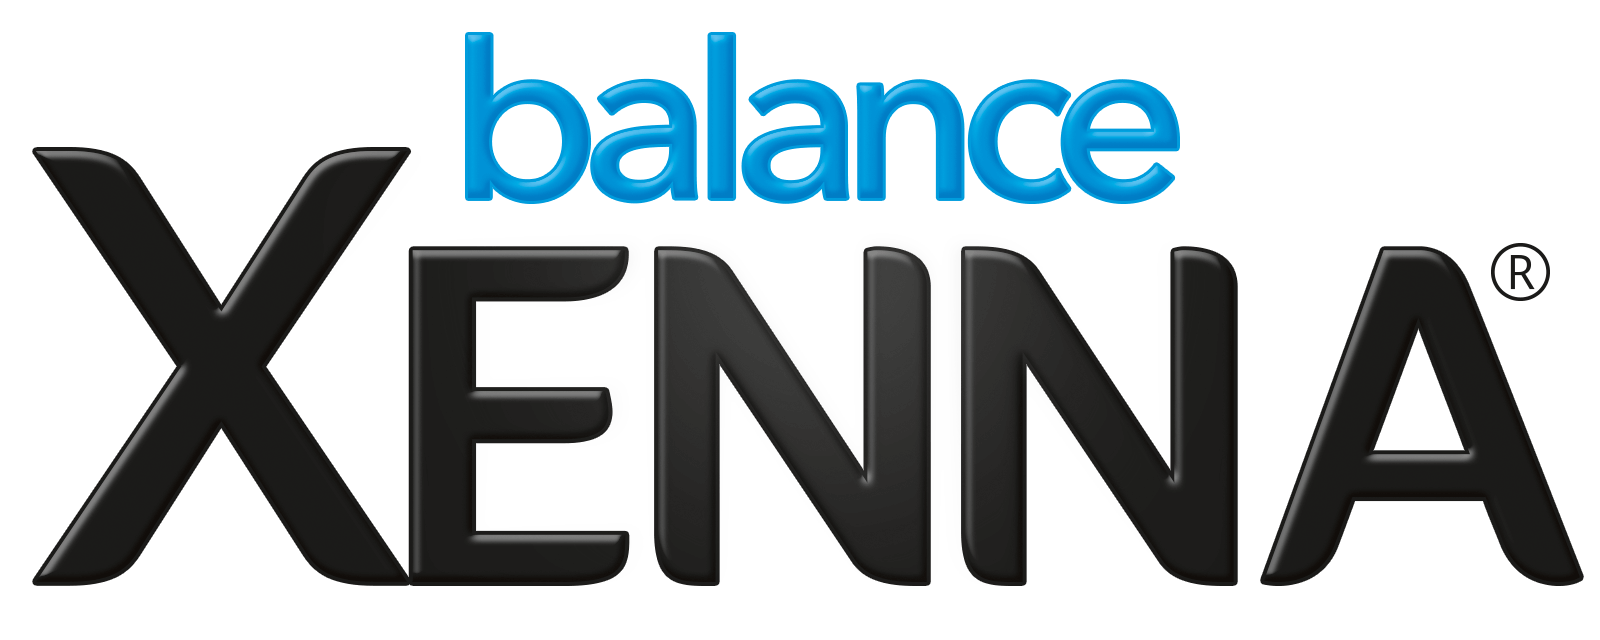 Logo XENNA balance